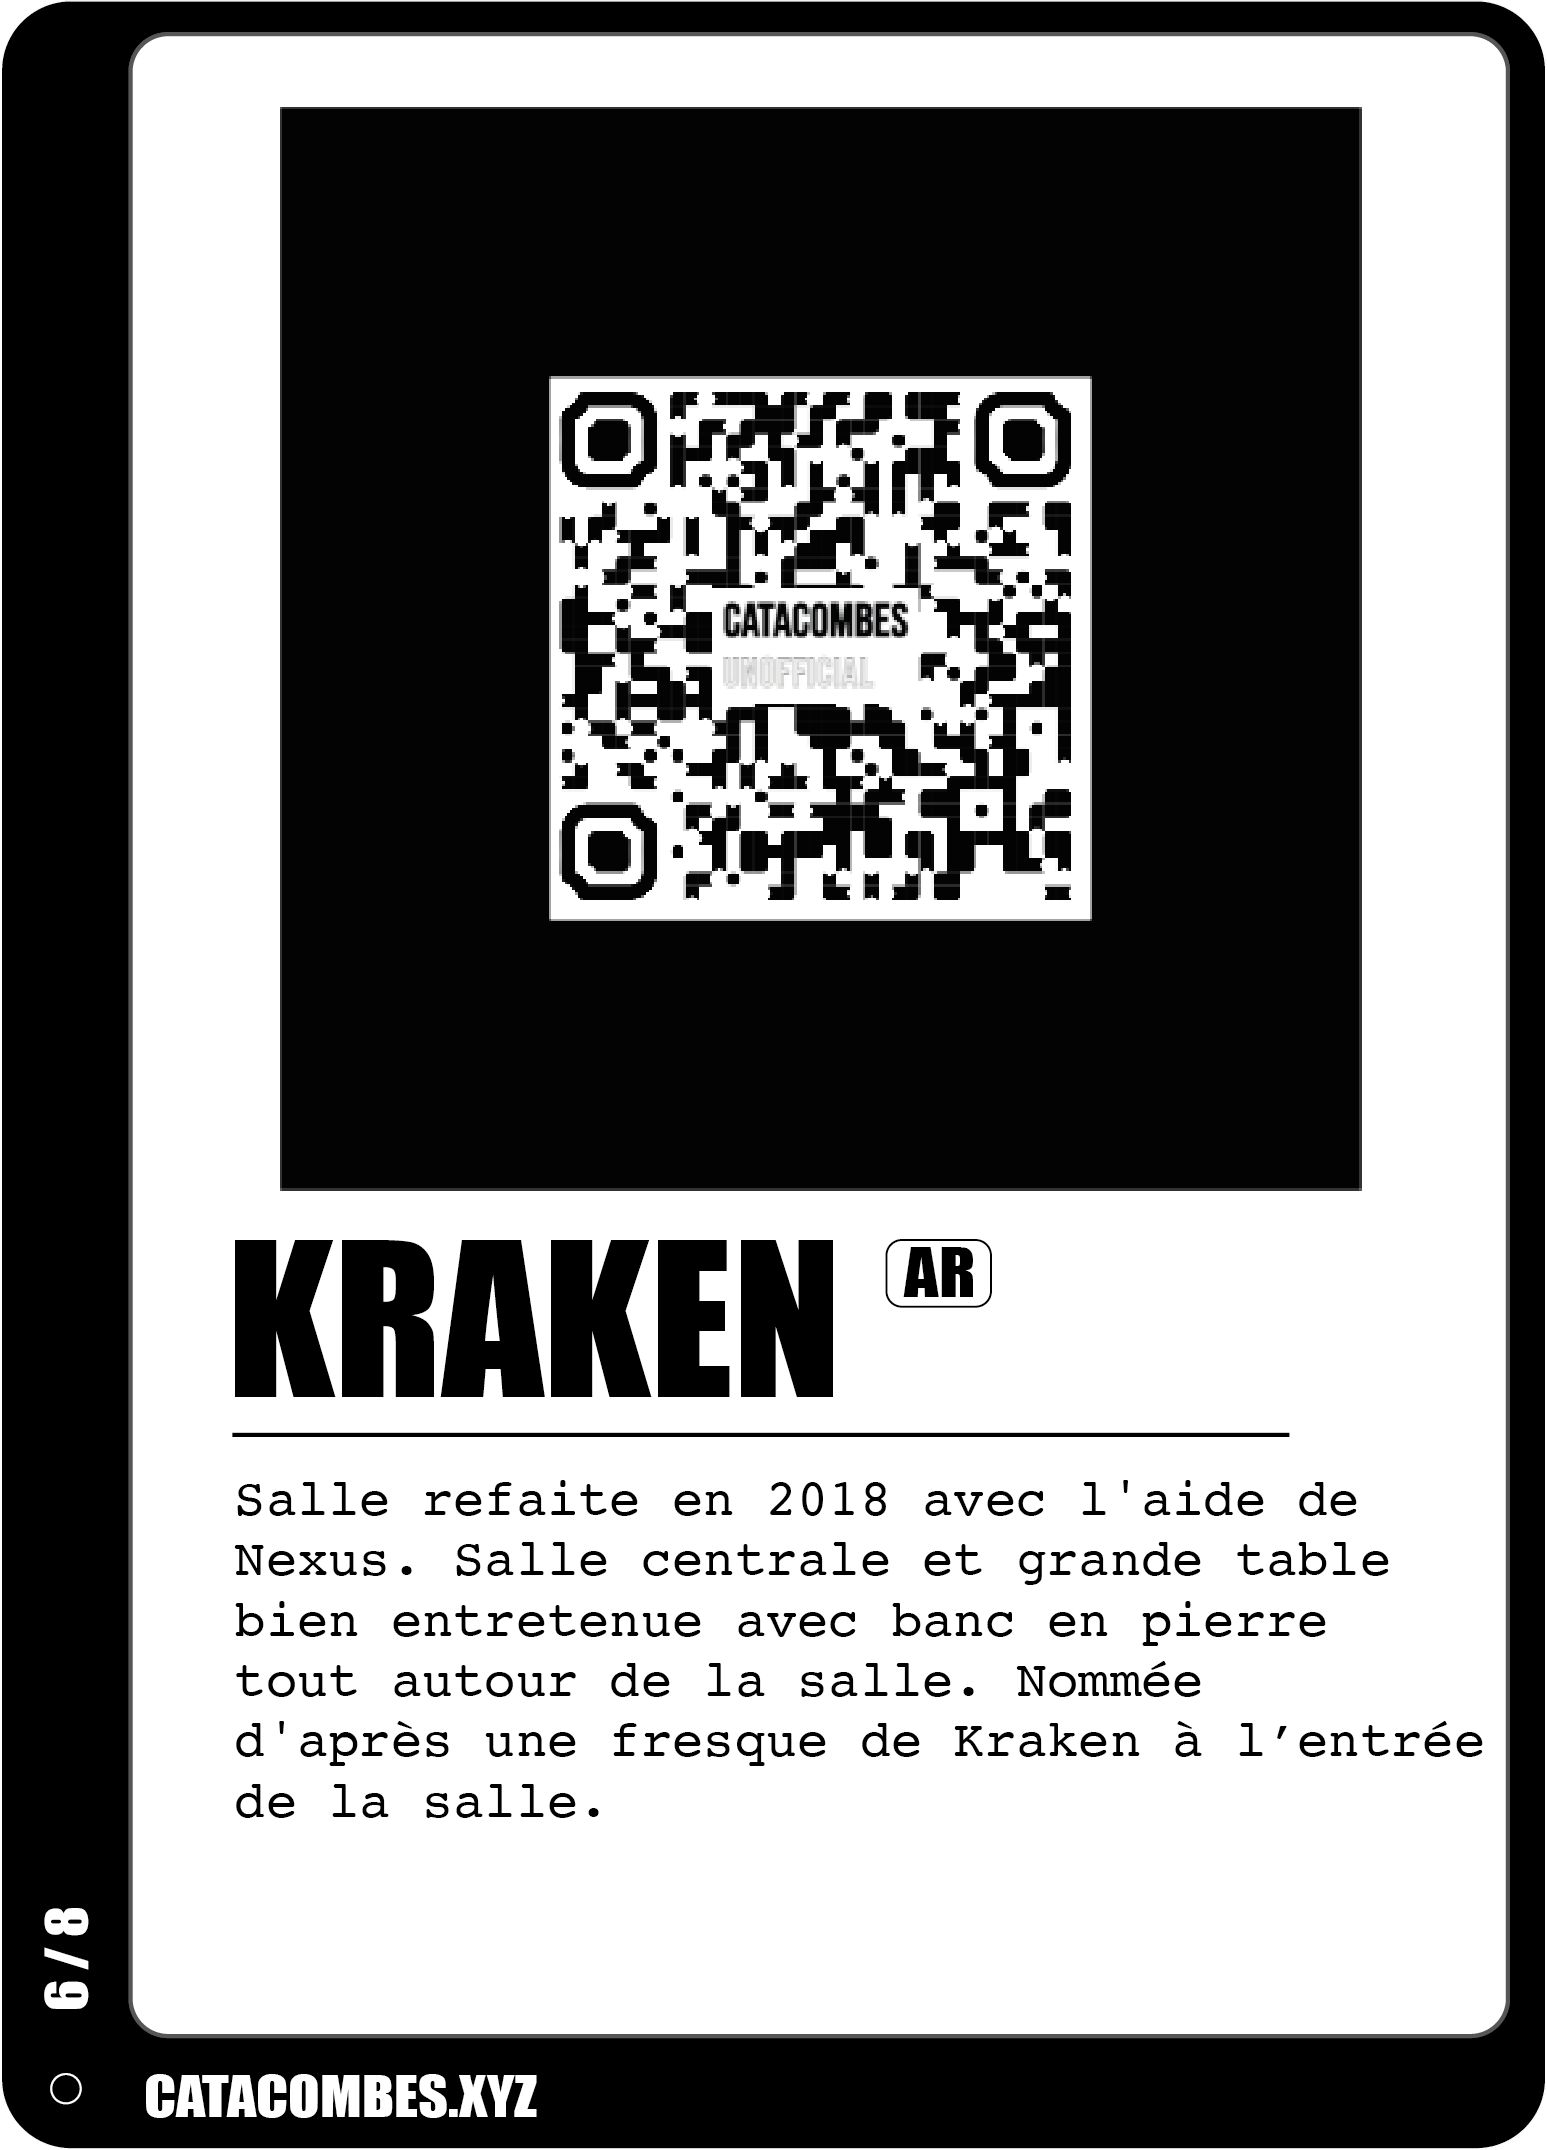 QR code permettant de faire apparaitre la salle Kraken en AR ainsi que des informations